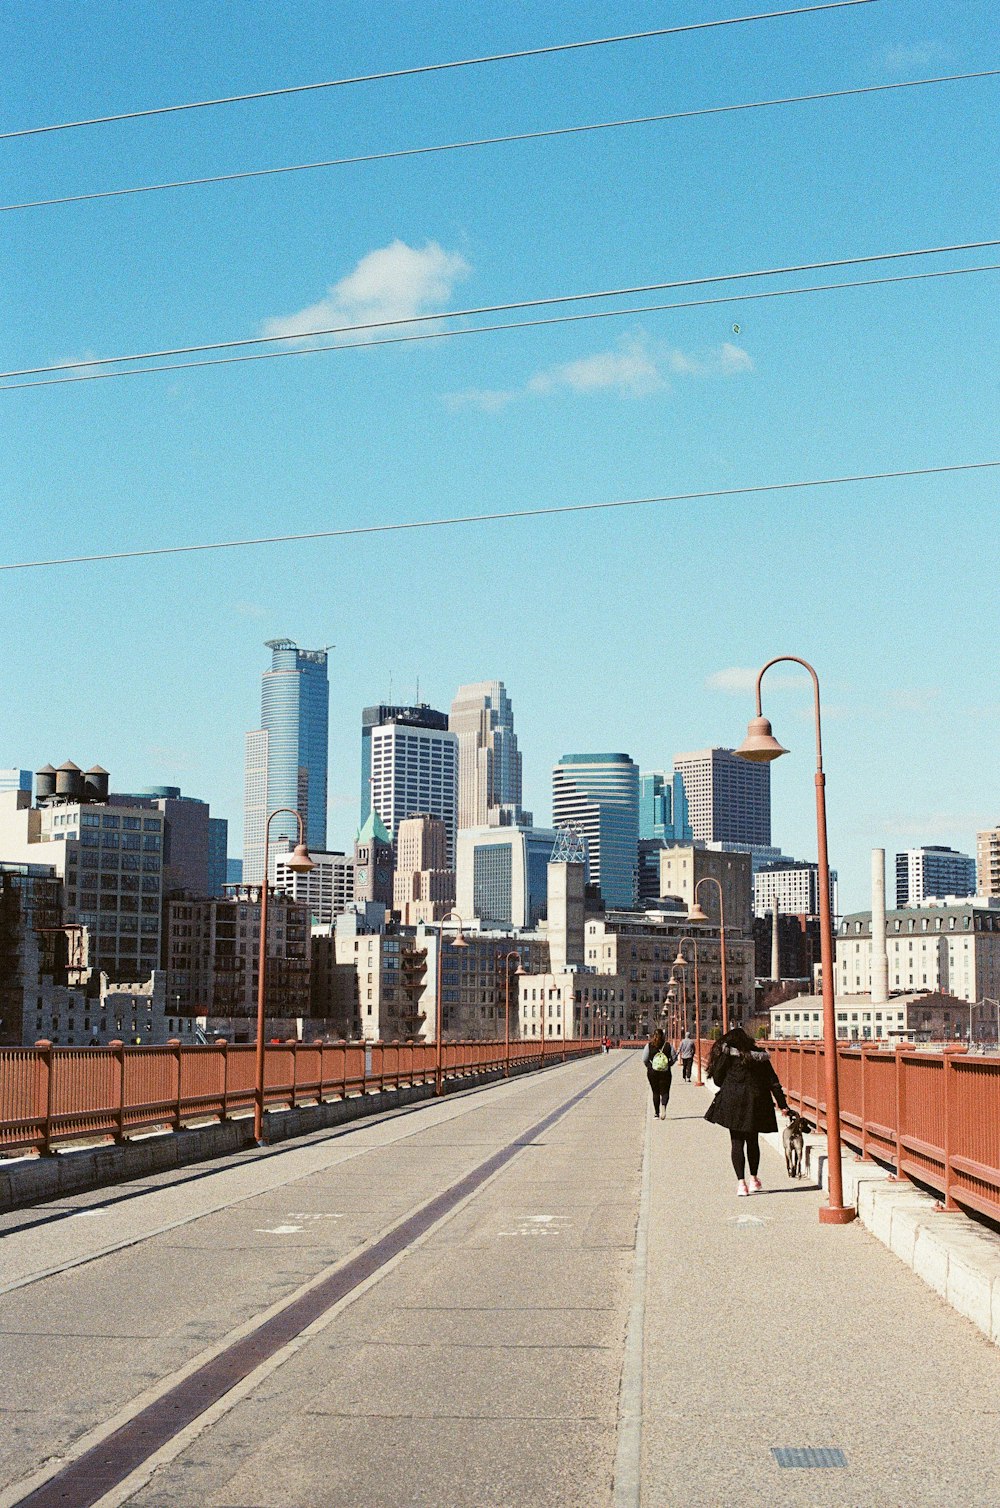 people walking on sidewalk near city buildings during daytime